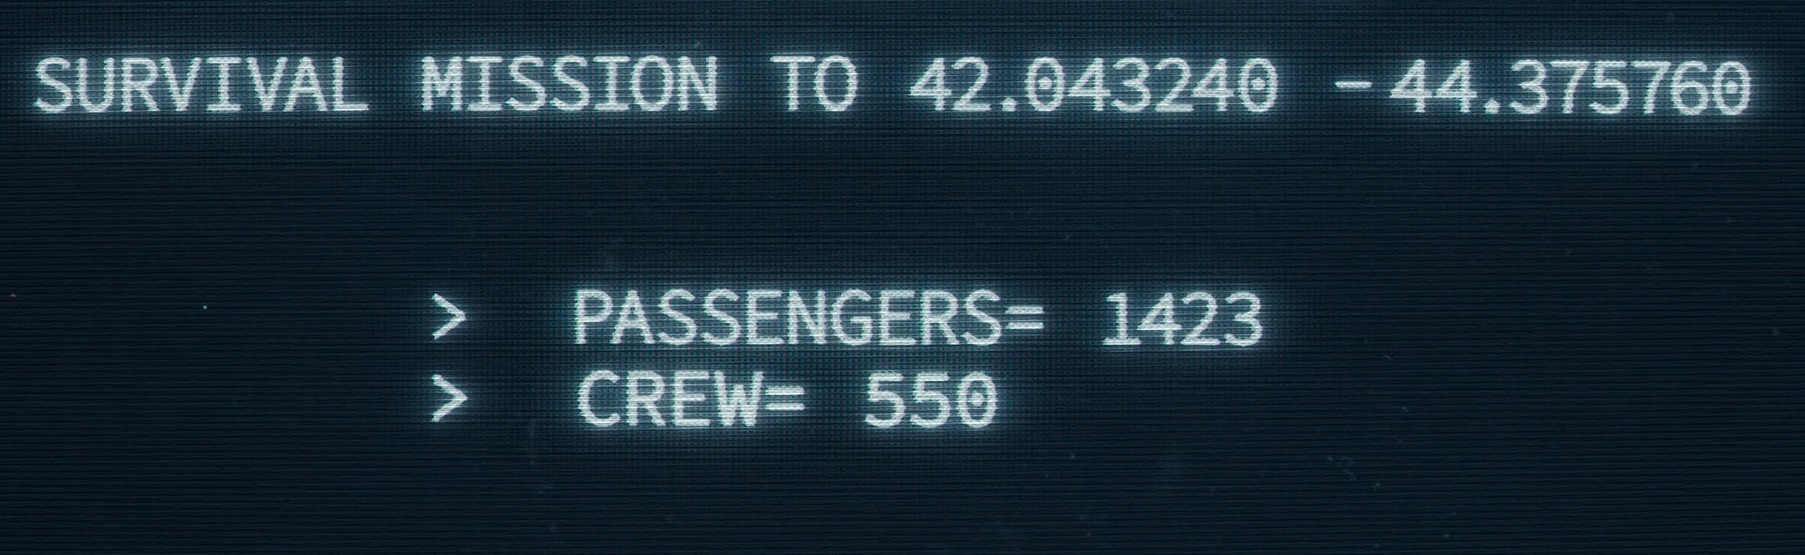 1899 prometeusz liczba pasażerów